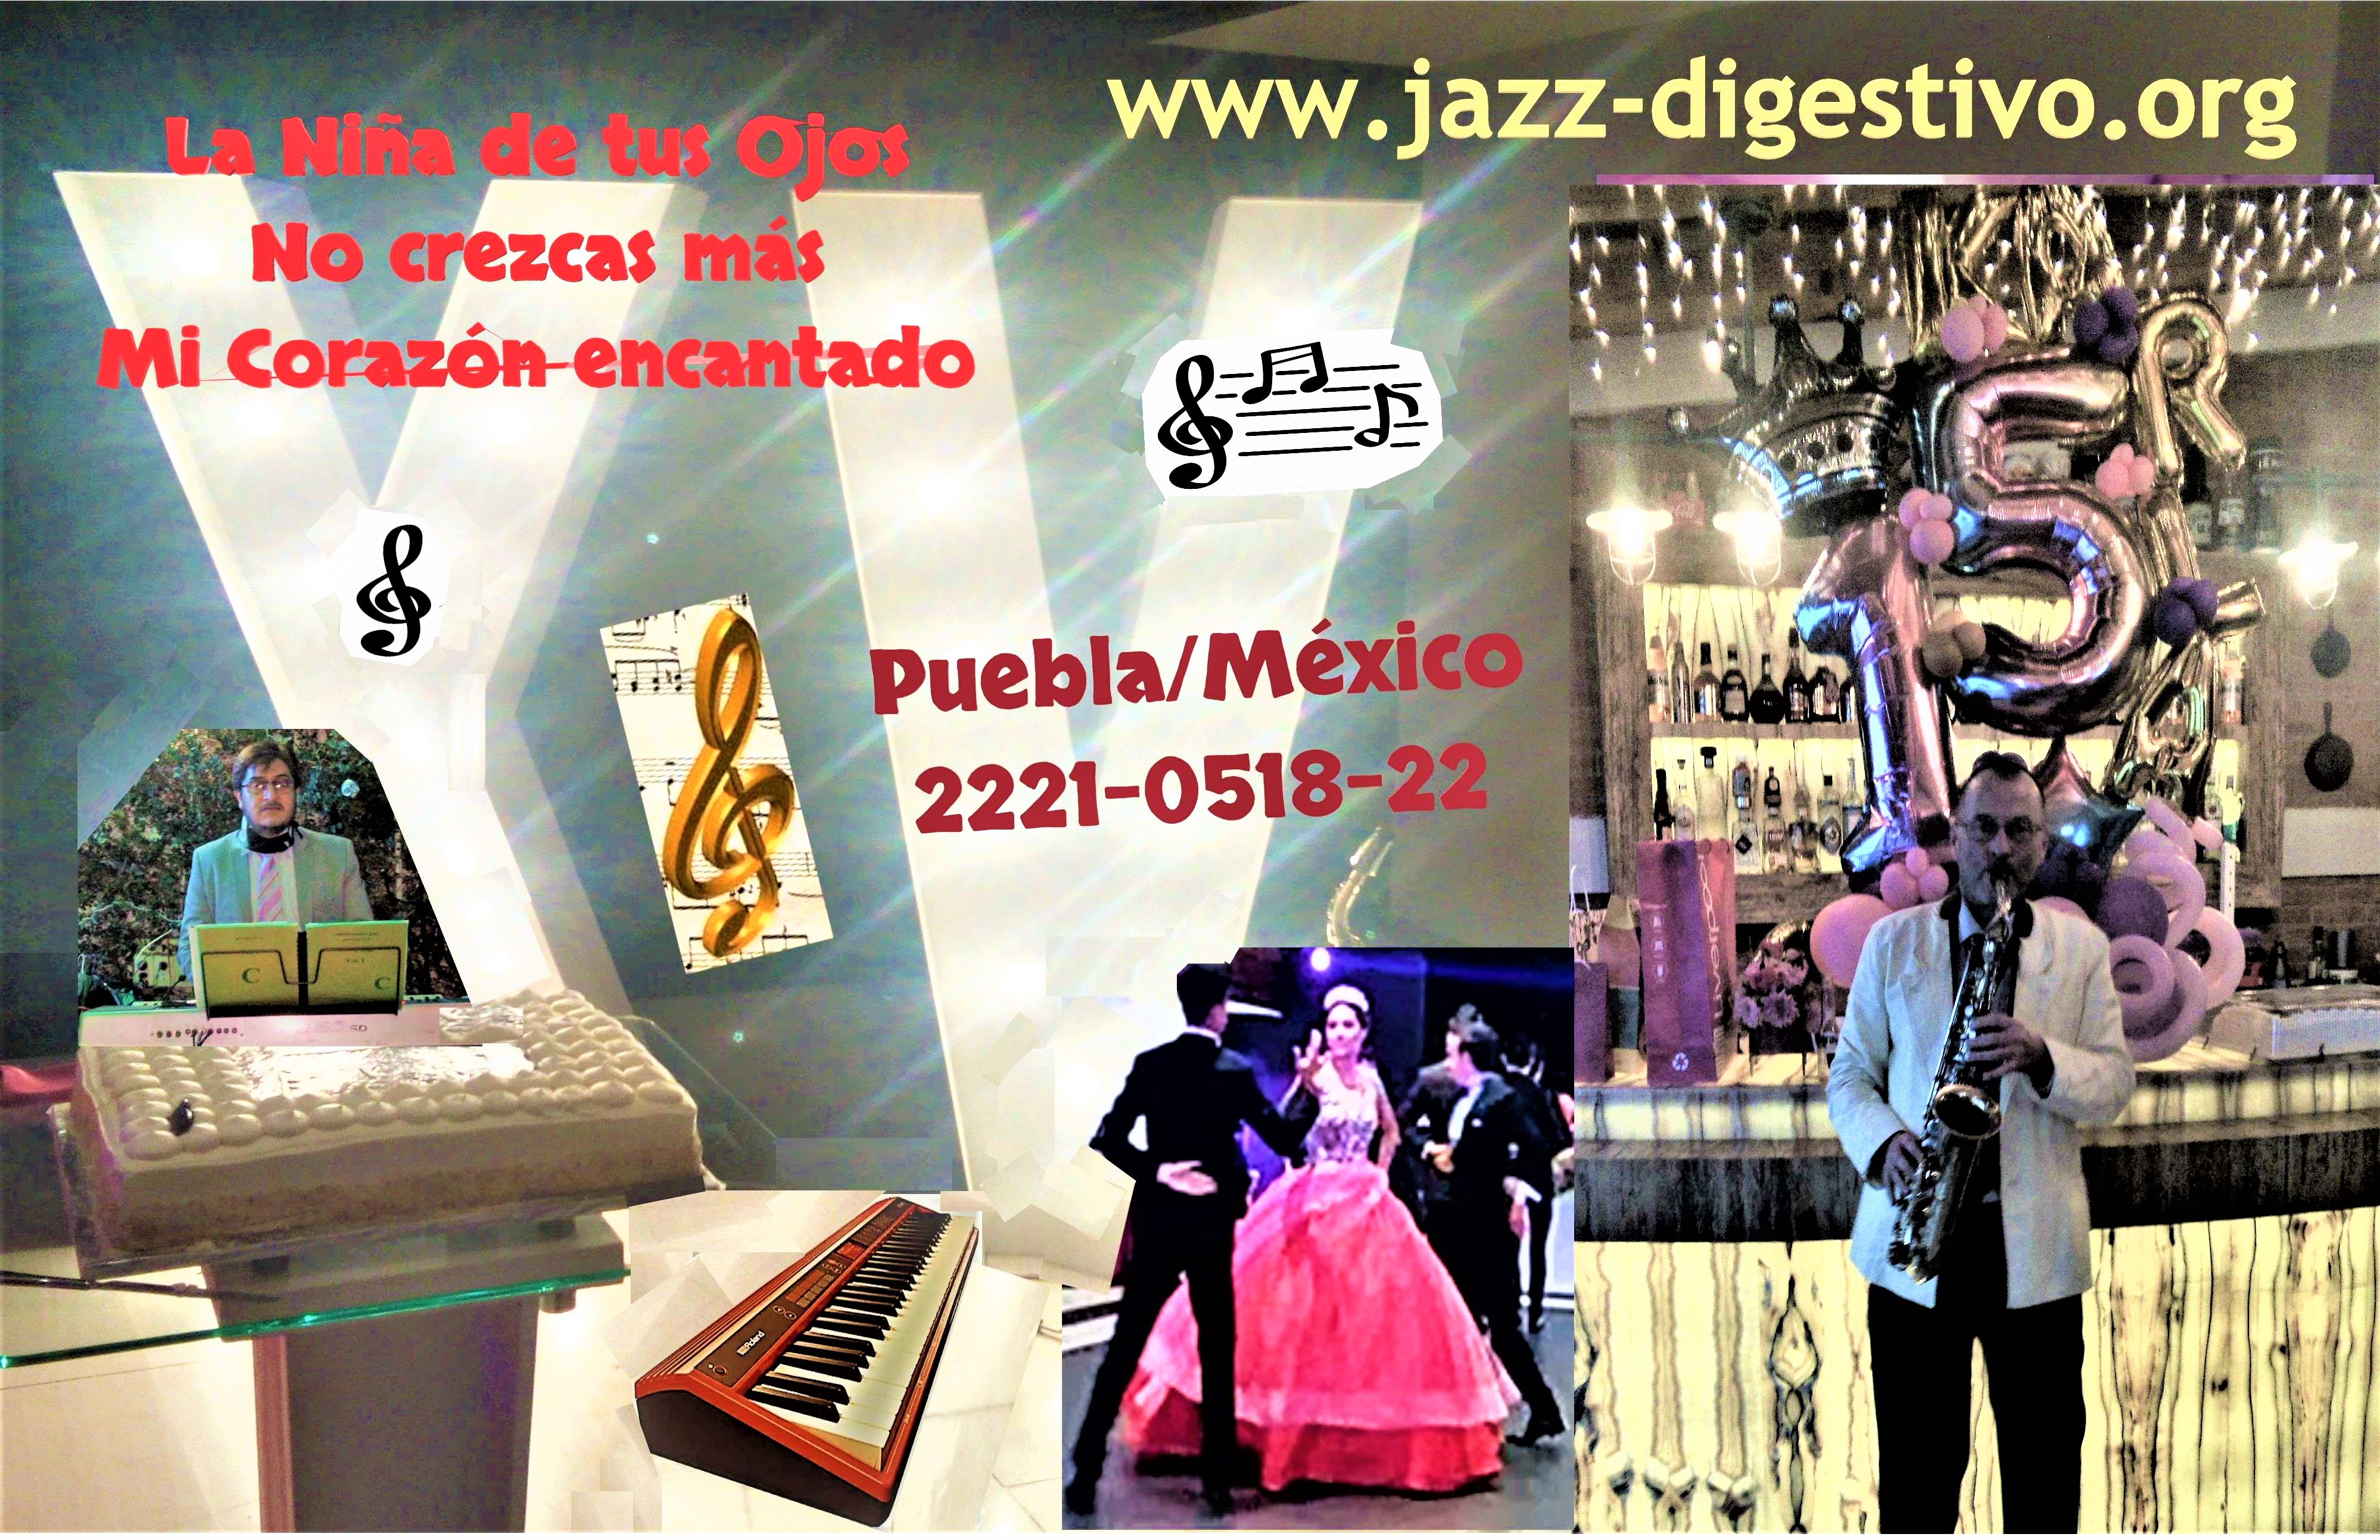 Música para XV años y otros festejos con Saxofón y Teclado -  Puebla/México. WhatsApp 2221-0518-22